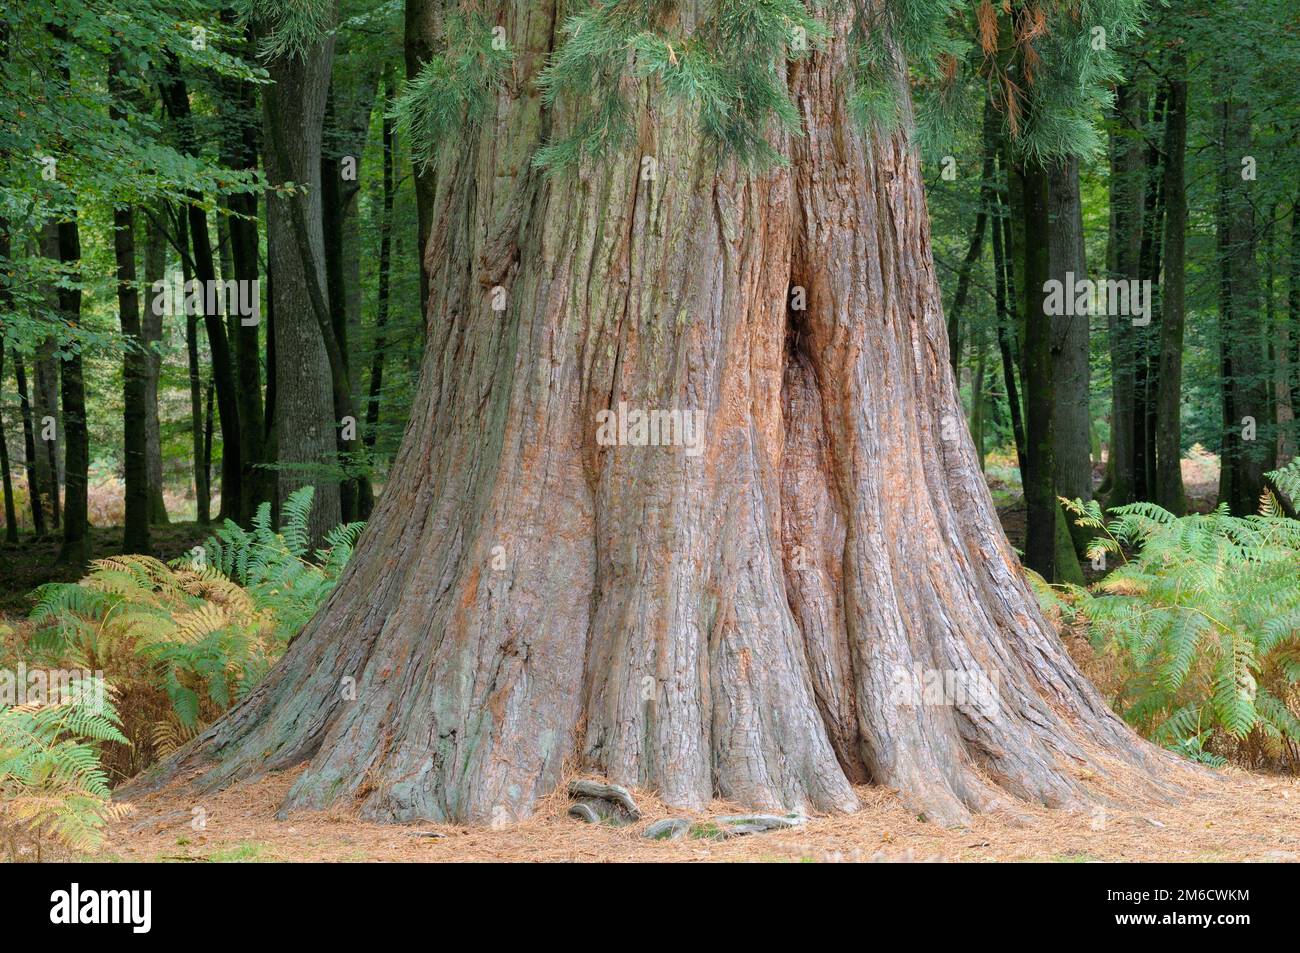 Riesen-Redwood-Baum oder Seqouia auf dem Rhinefield Ornamental Drive im New Forest National Park, Hampshire, England, Großbritannien. Stockfoto